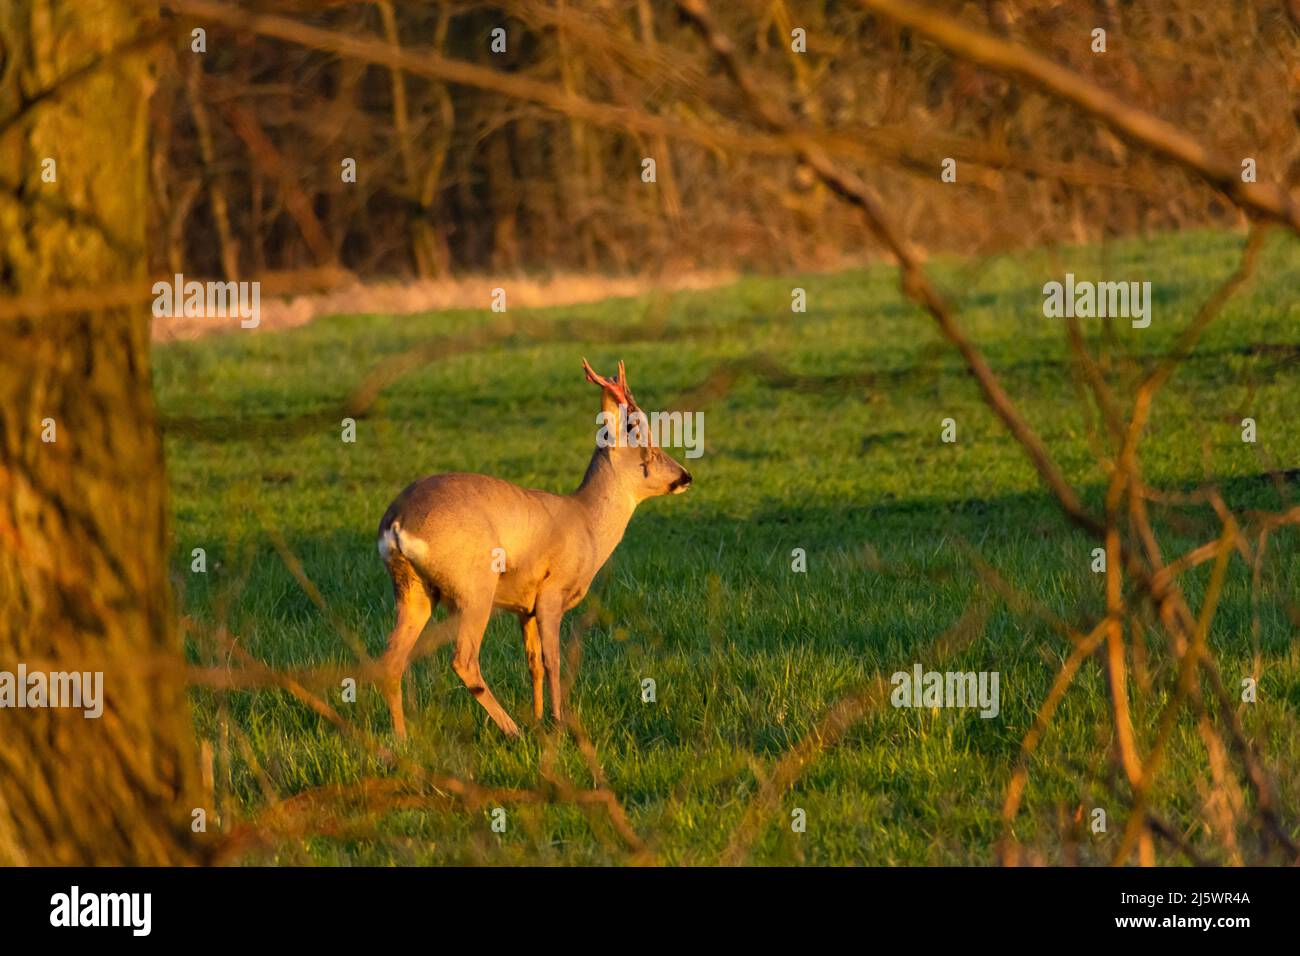 Roe deer shedding its antler skin, spring view Stock Photo